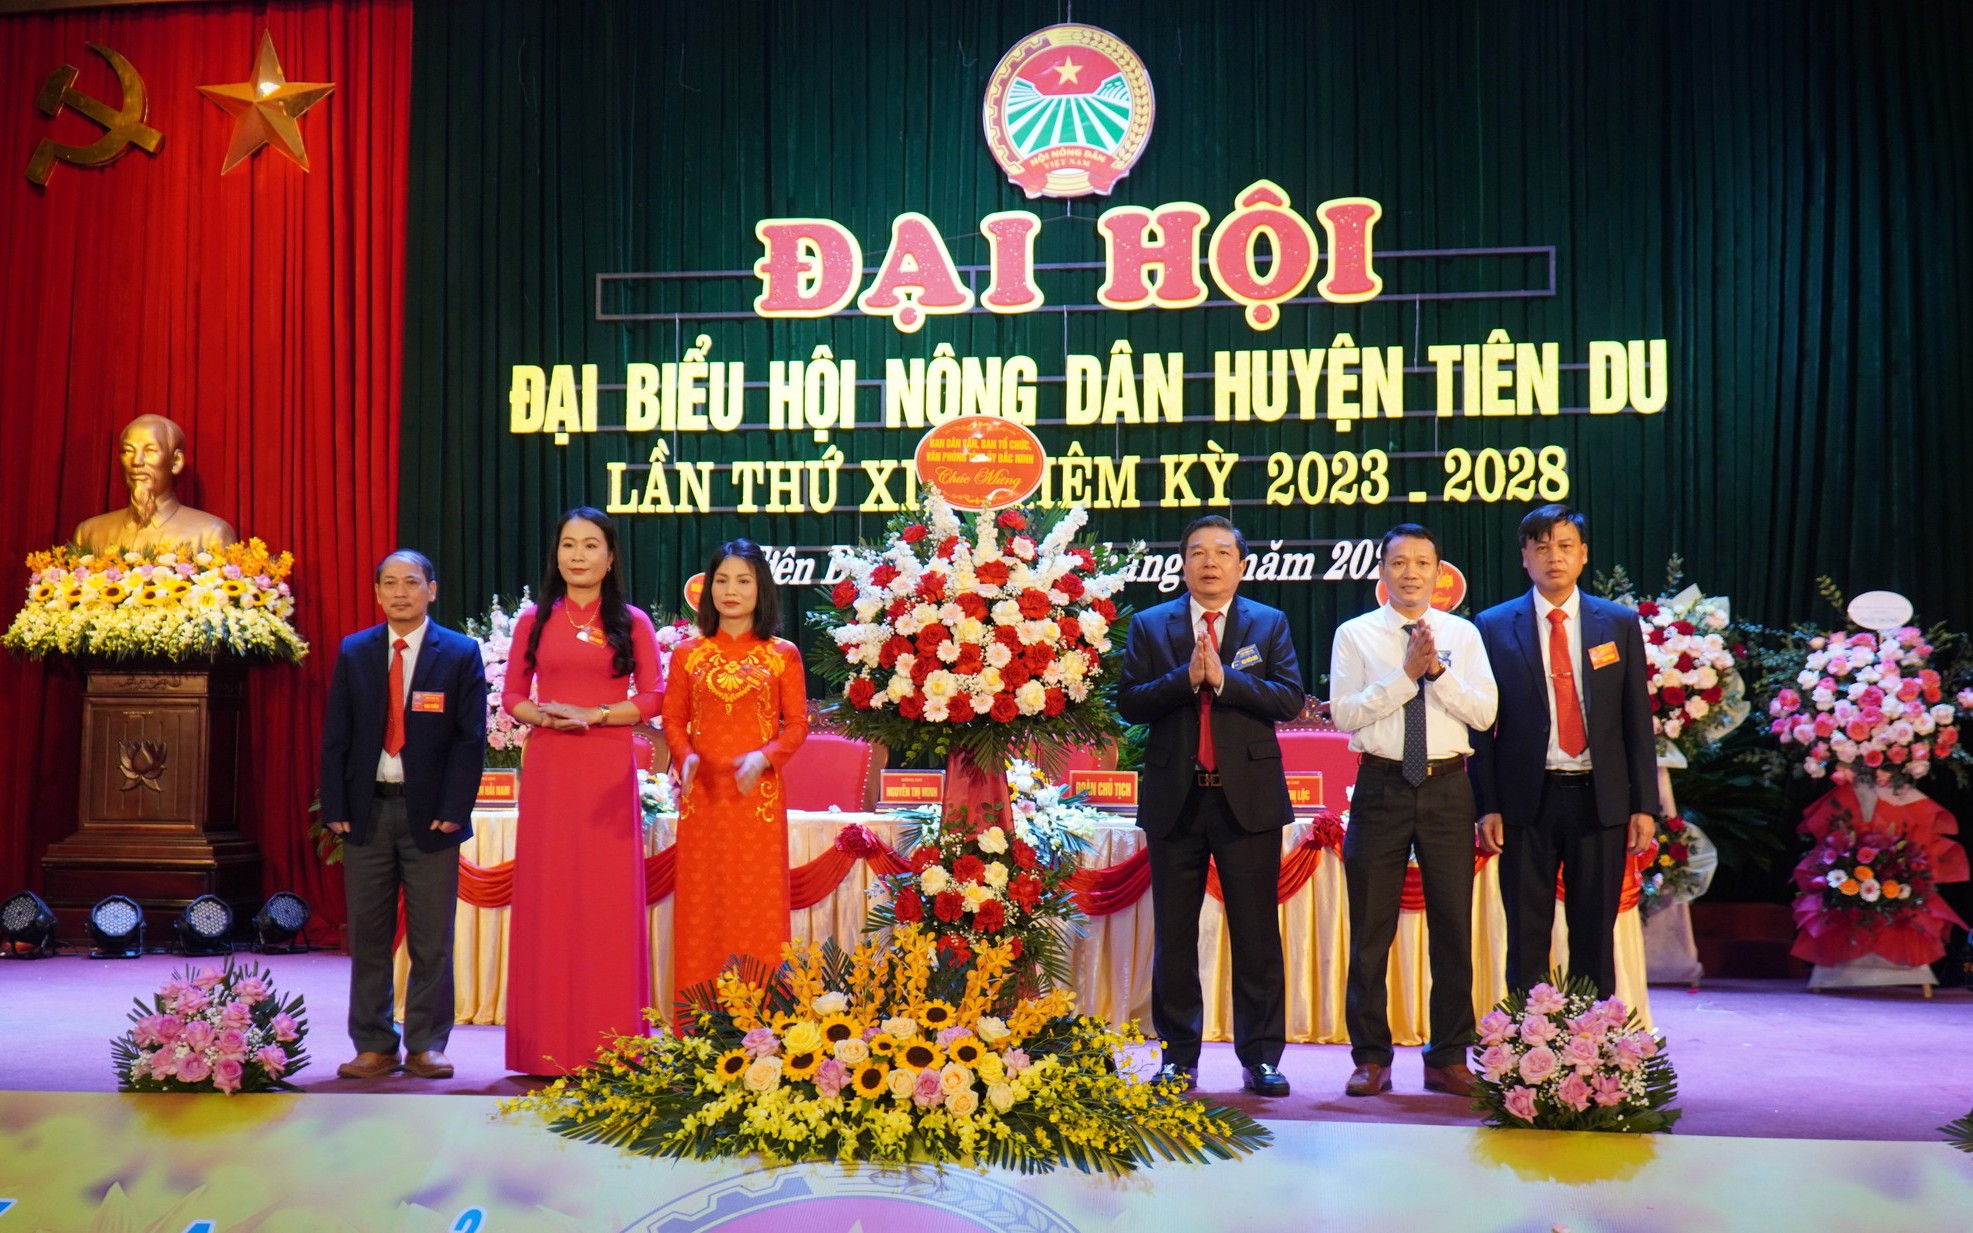 Bà Nguyễn Thị Minh tái đắc cử Chủ tịch Hội Nông dân huyện Tiên Du, tỉnh Bắc Ninh